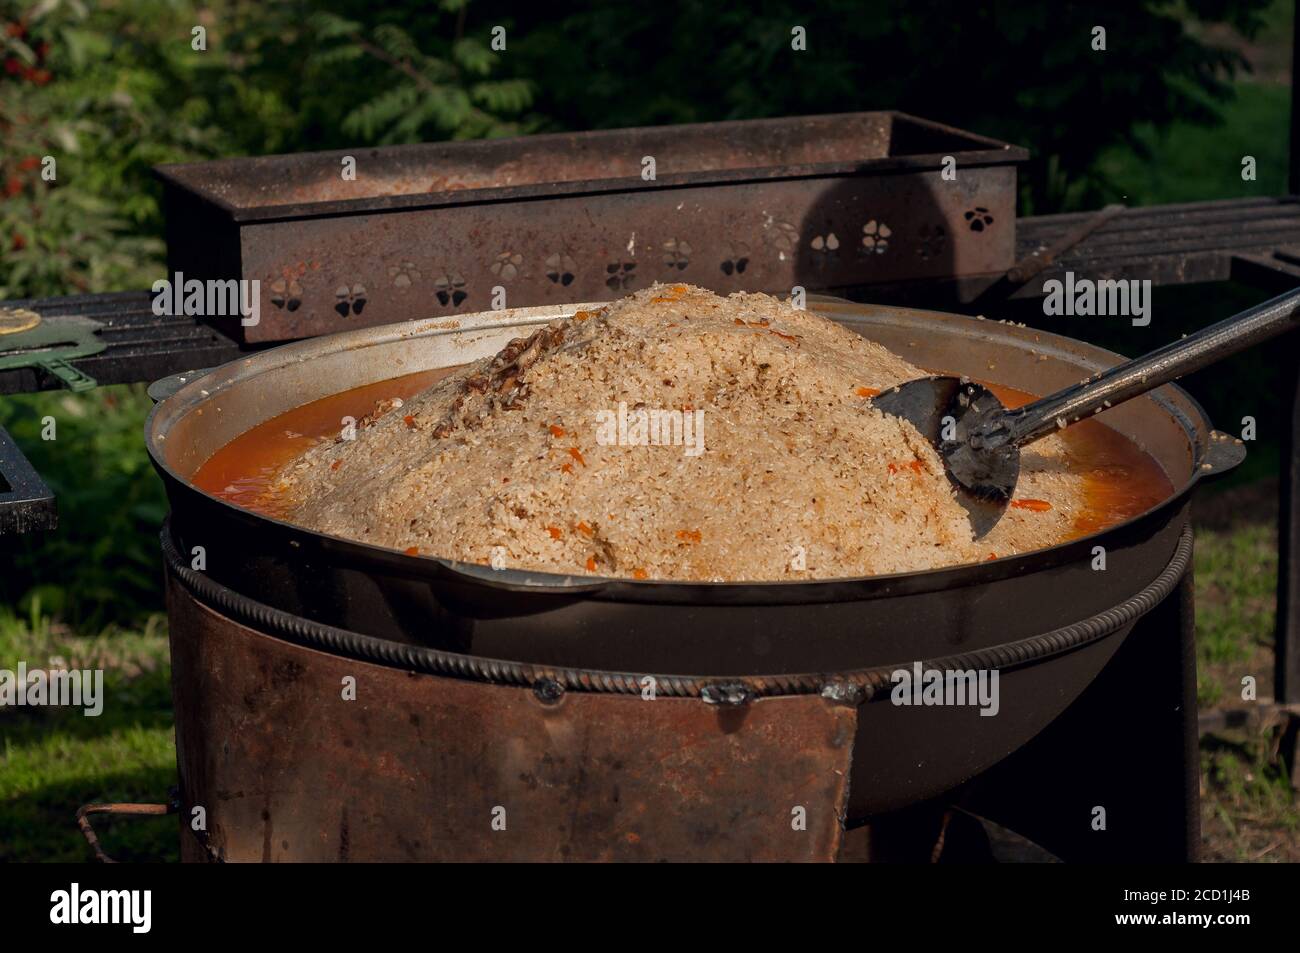 https://c8.alamy.com/compes/2cd1j4b/alimentacion-nacional-de-los-pueblos-del-este-pilaf-en-un-gran-caldero-arroz-y-cordero-cocidos-sobre-el-fuego-cocinar-comida-nacional-2cd1j4b.jpg